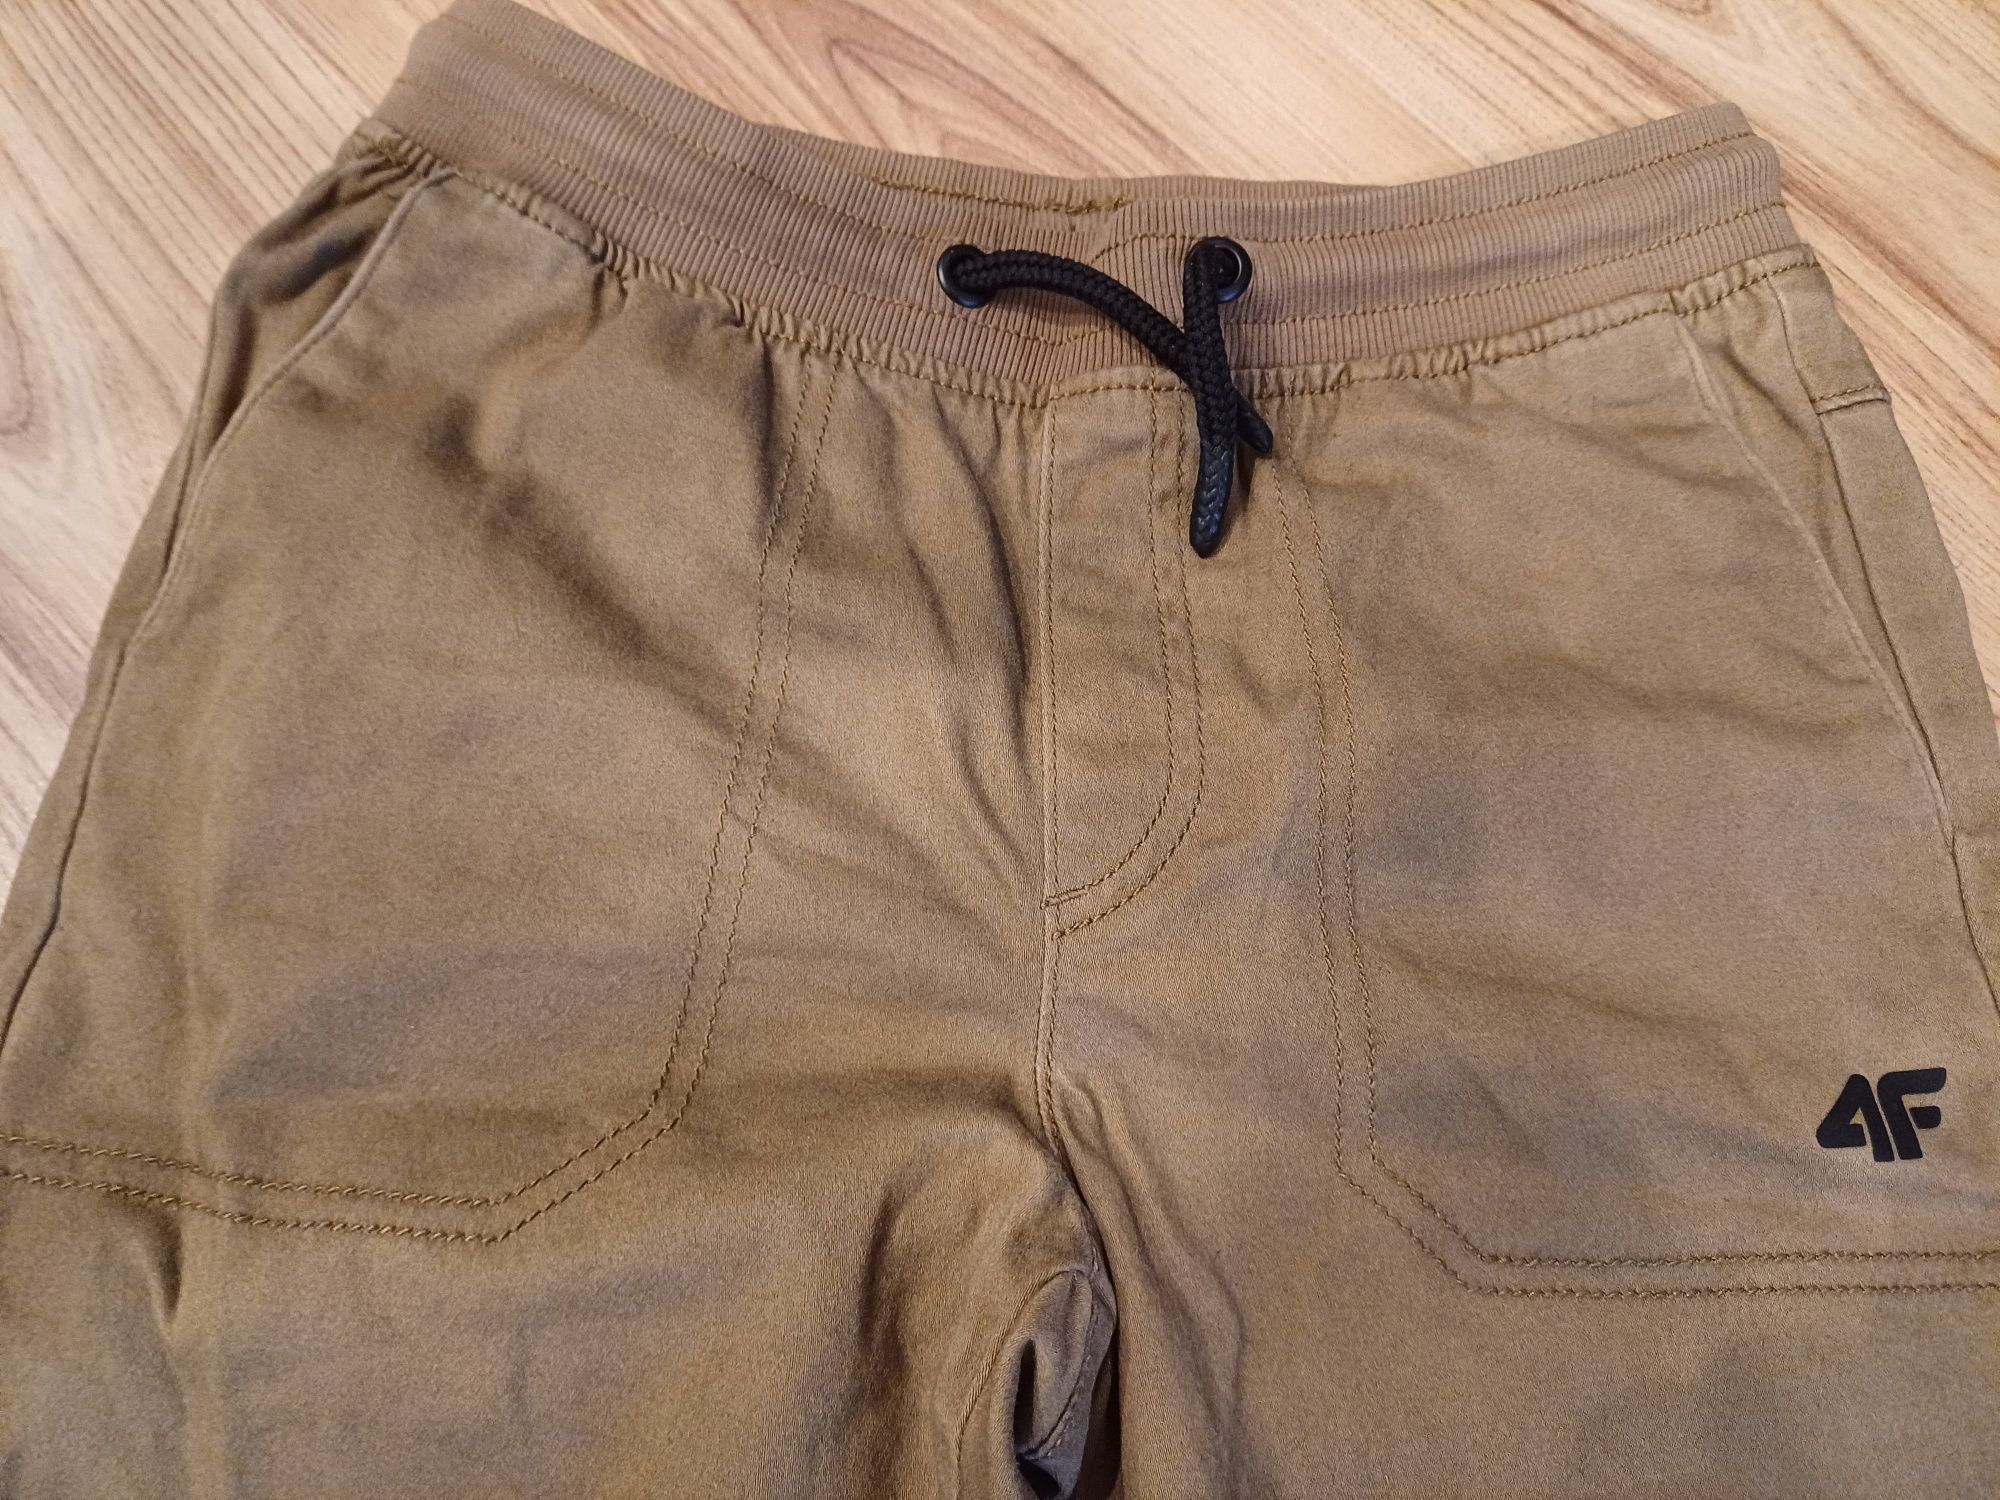 Spodnie materiałowe bawełna, joggery chłopięce 4F, rozmiar 146